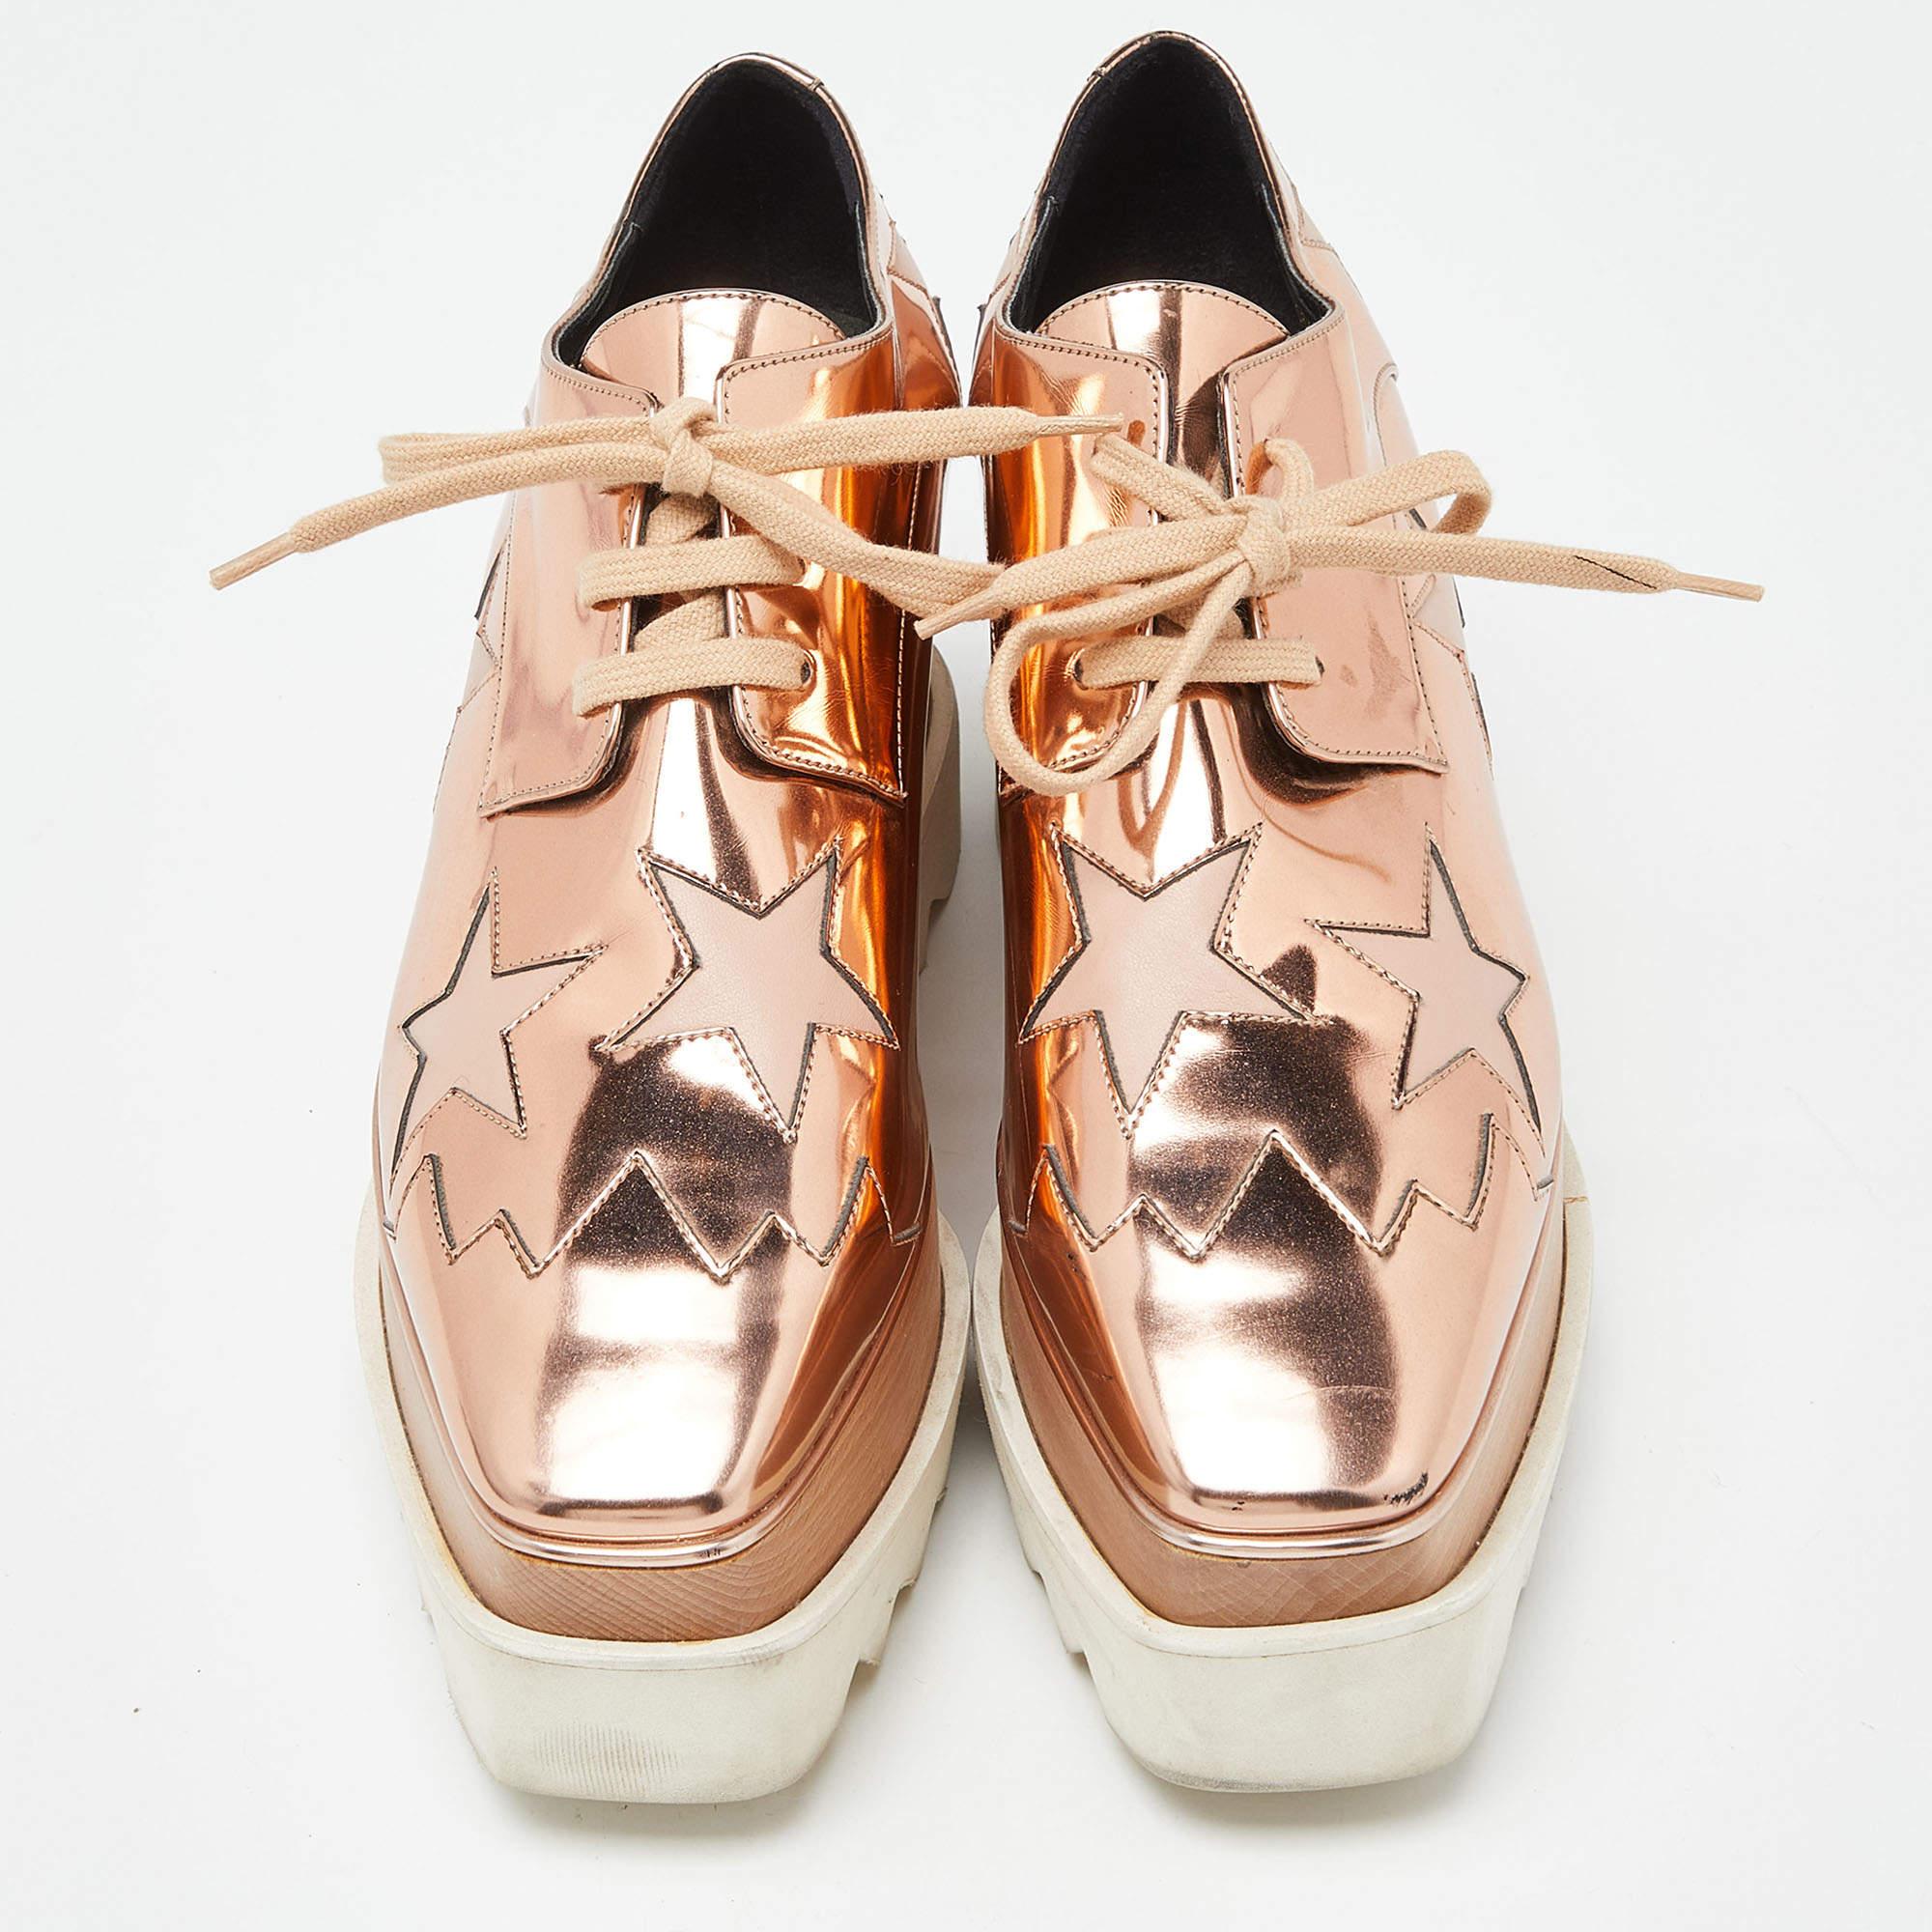 Stella McCartney fait preuve d'un style élevé et d'un goût unique pour la mode avec ces chaussures Elyse. Ils regorgent de détails exquis, comme les lacets sur l'empeigne et les épaisses plates-formes. Procurez-vous cette paire dès aujourd'hui et